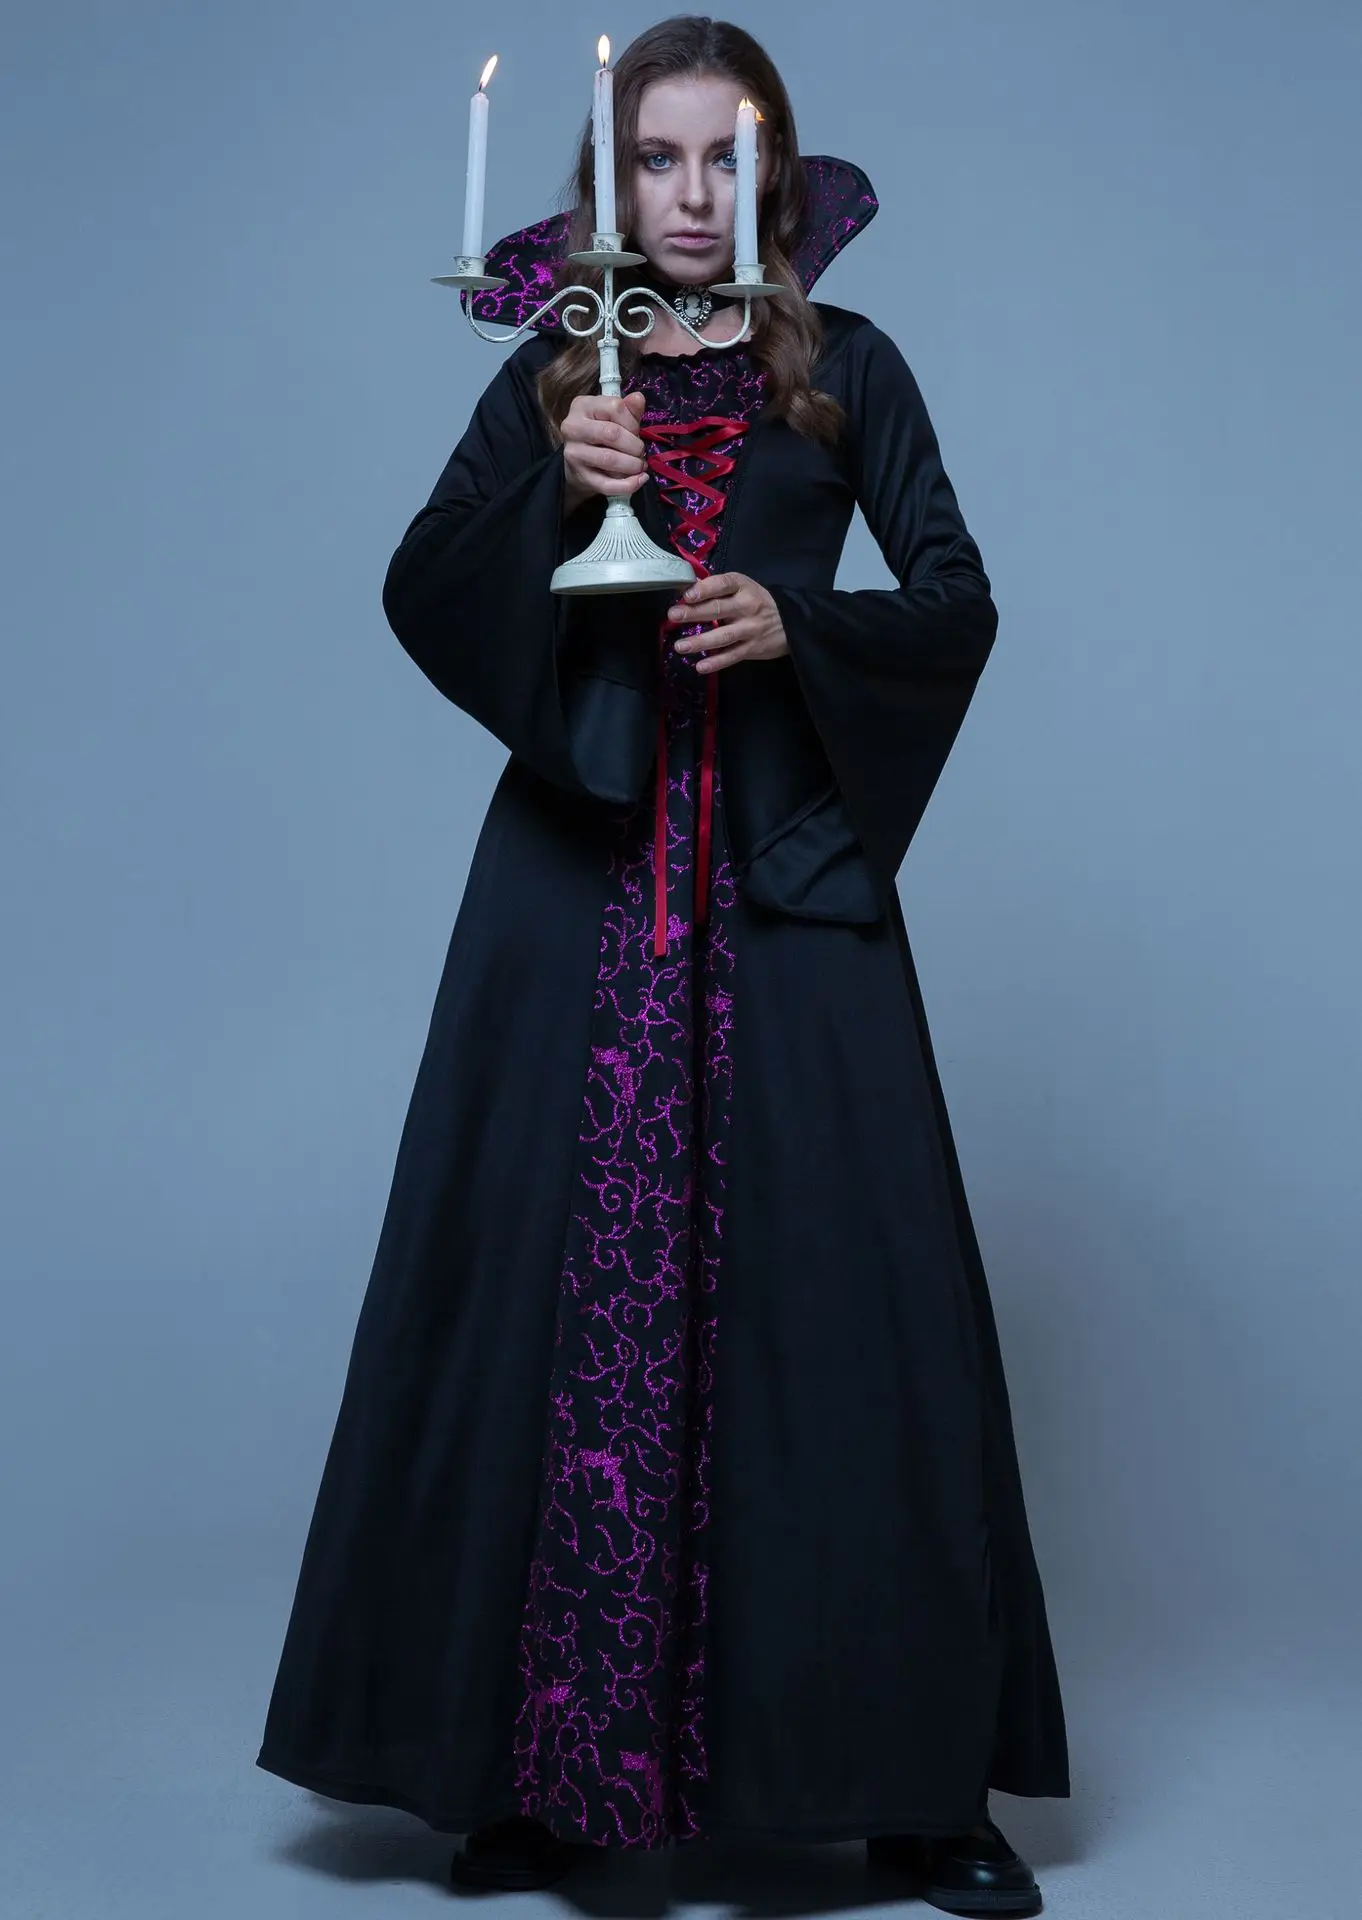 レトロゴシックヴァンパイアロードレス、ハロウィーンのバスローブ、中世のコート、クイーンドレス